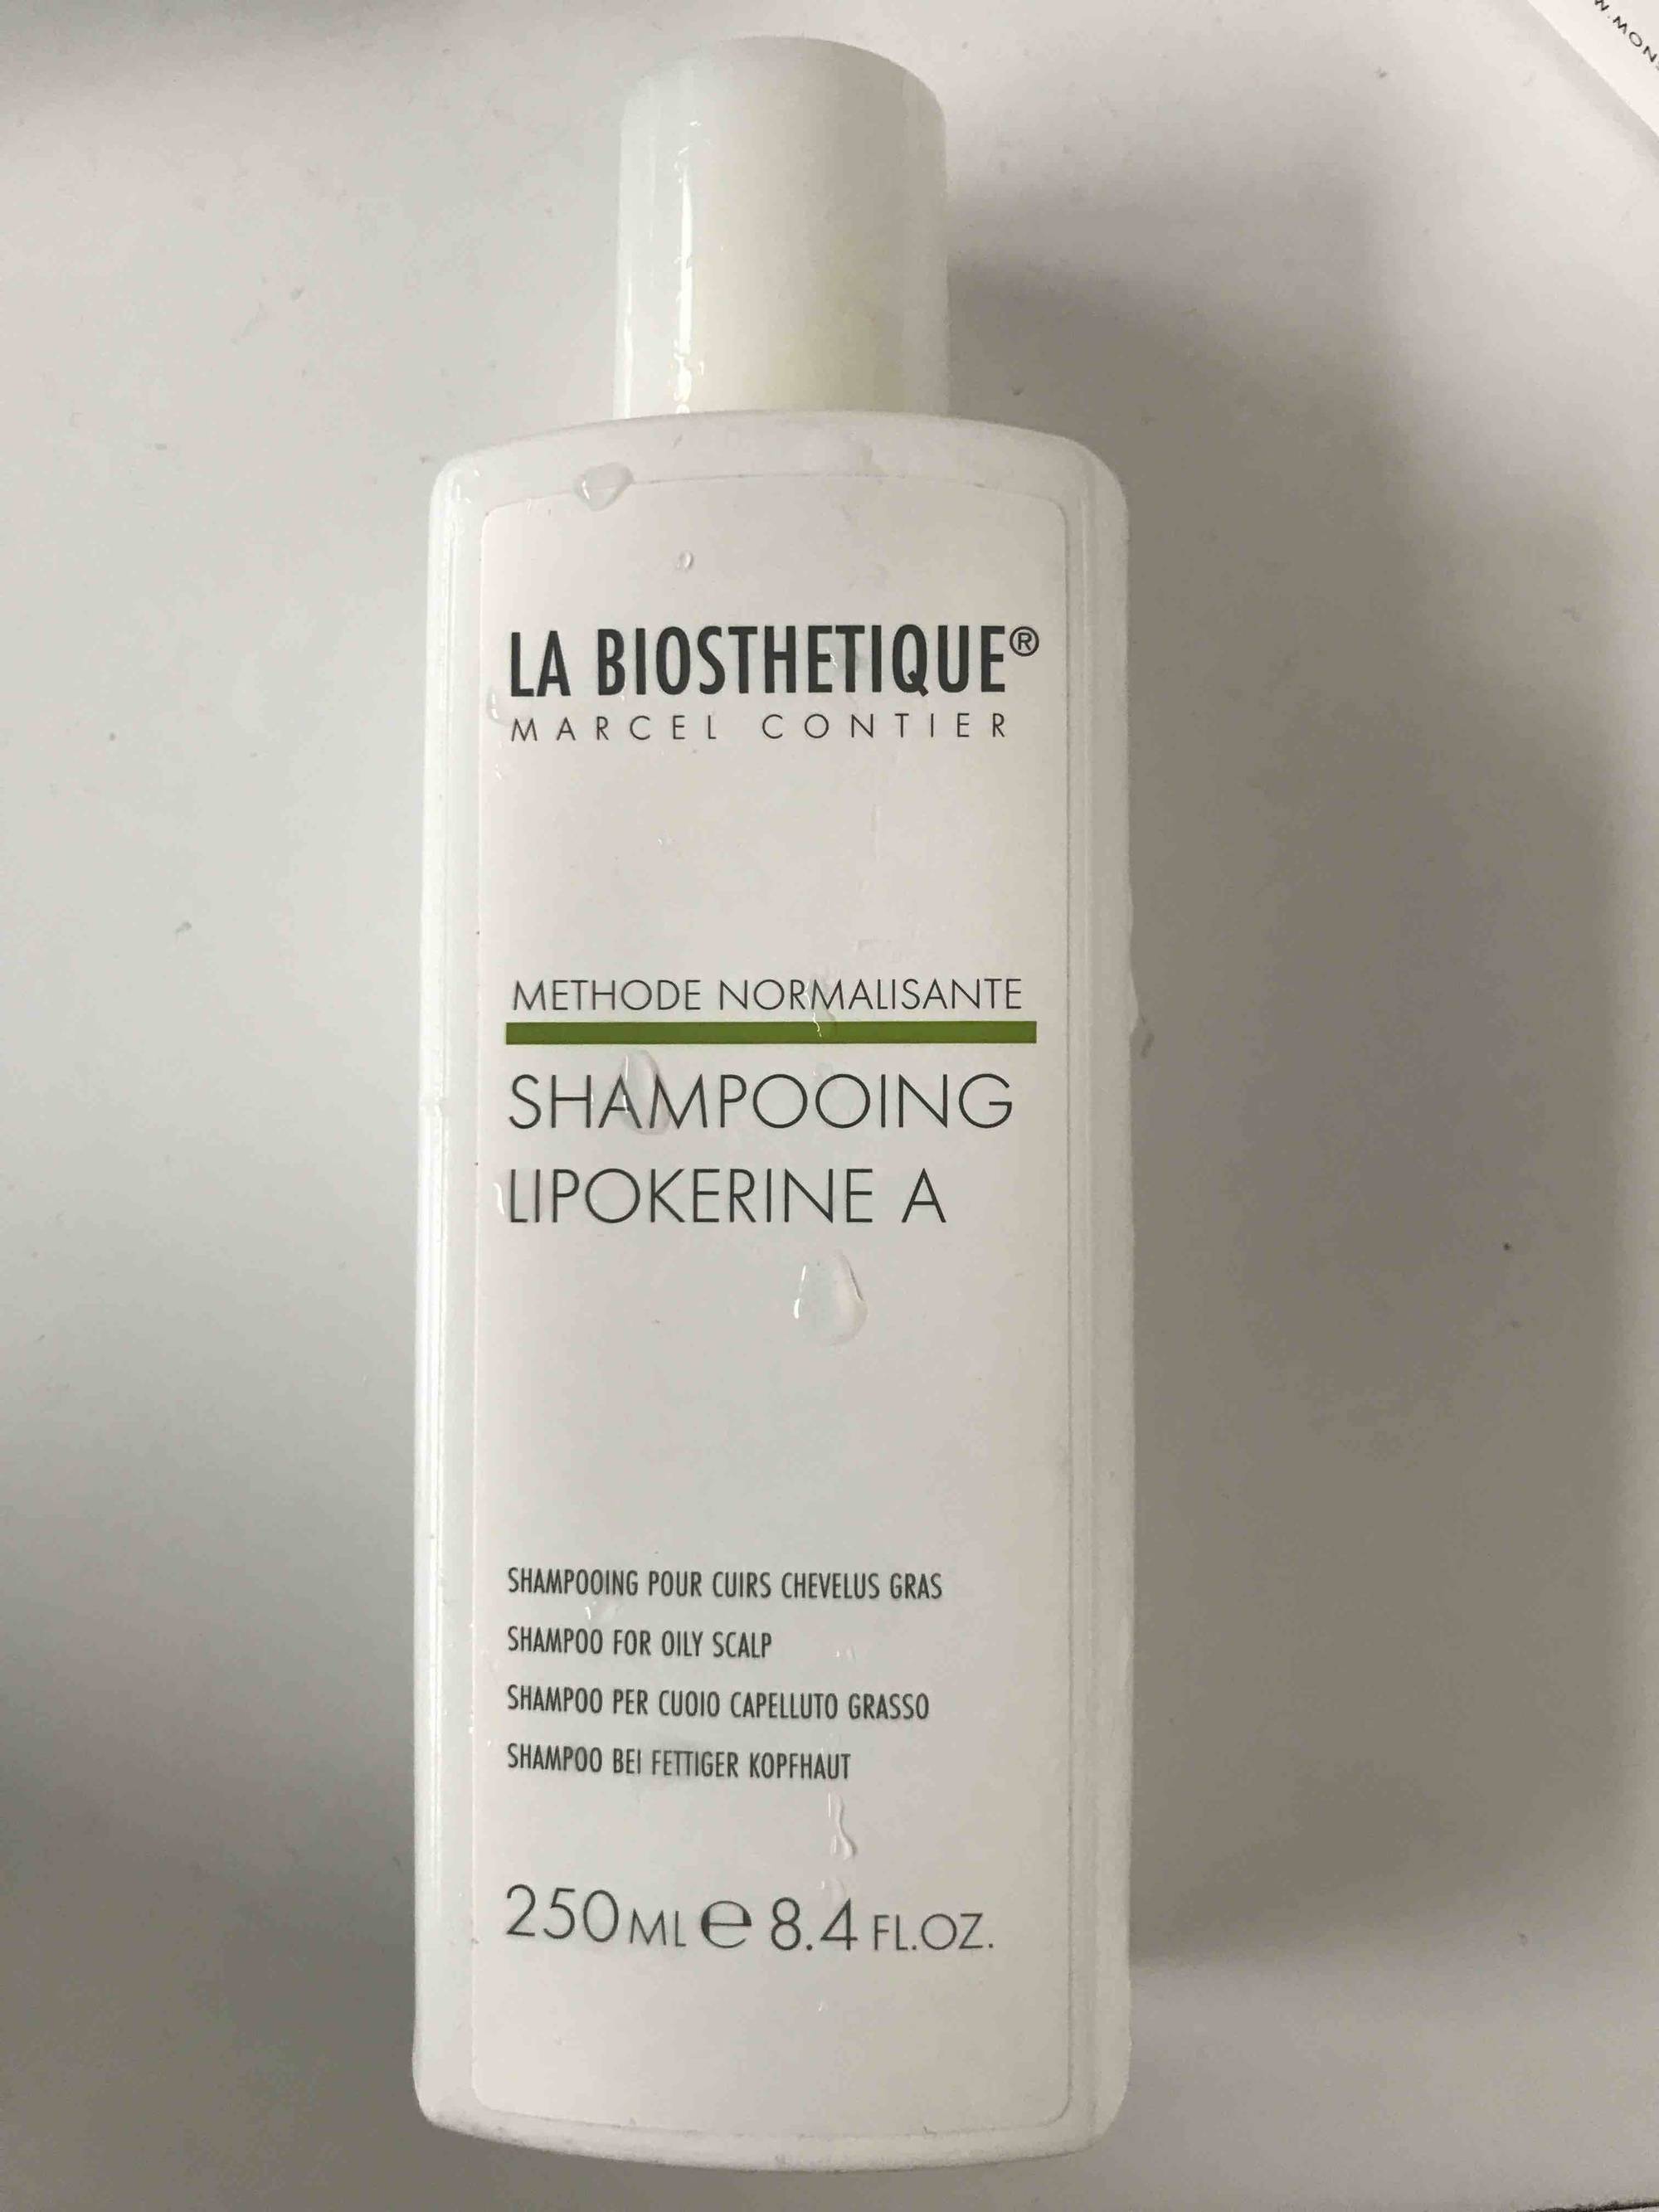 LA BIOSTHETIQUE - Méthode normalisante - Shampooing Lipokerine A